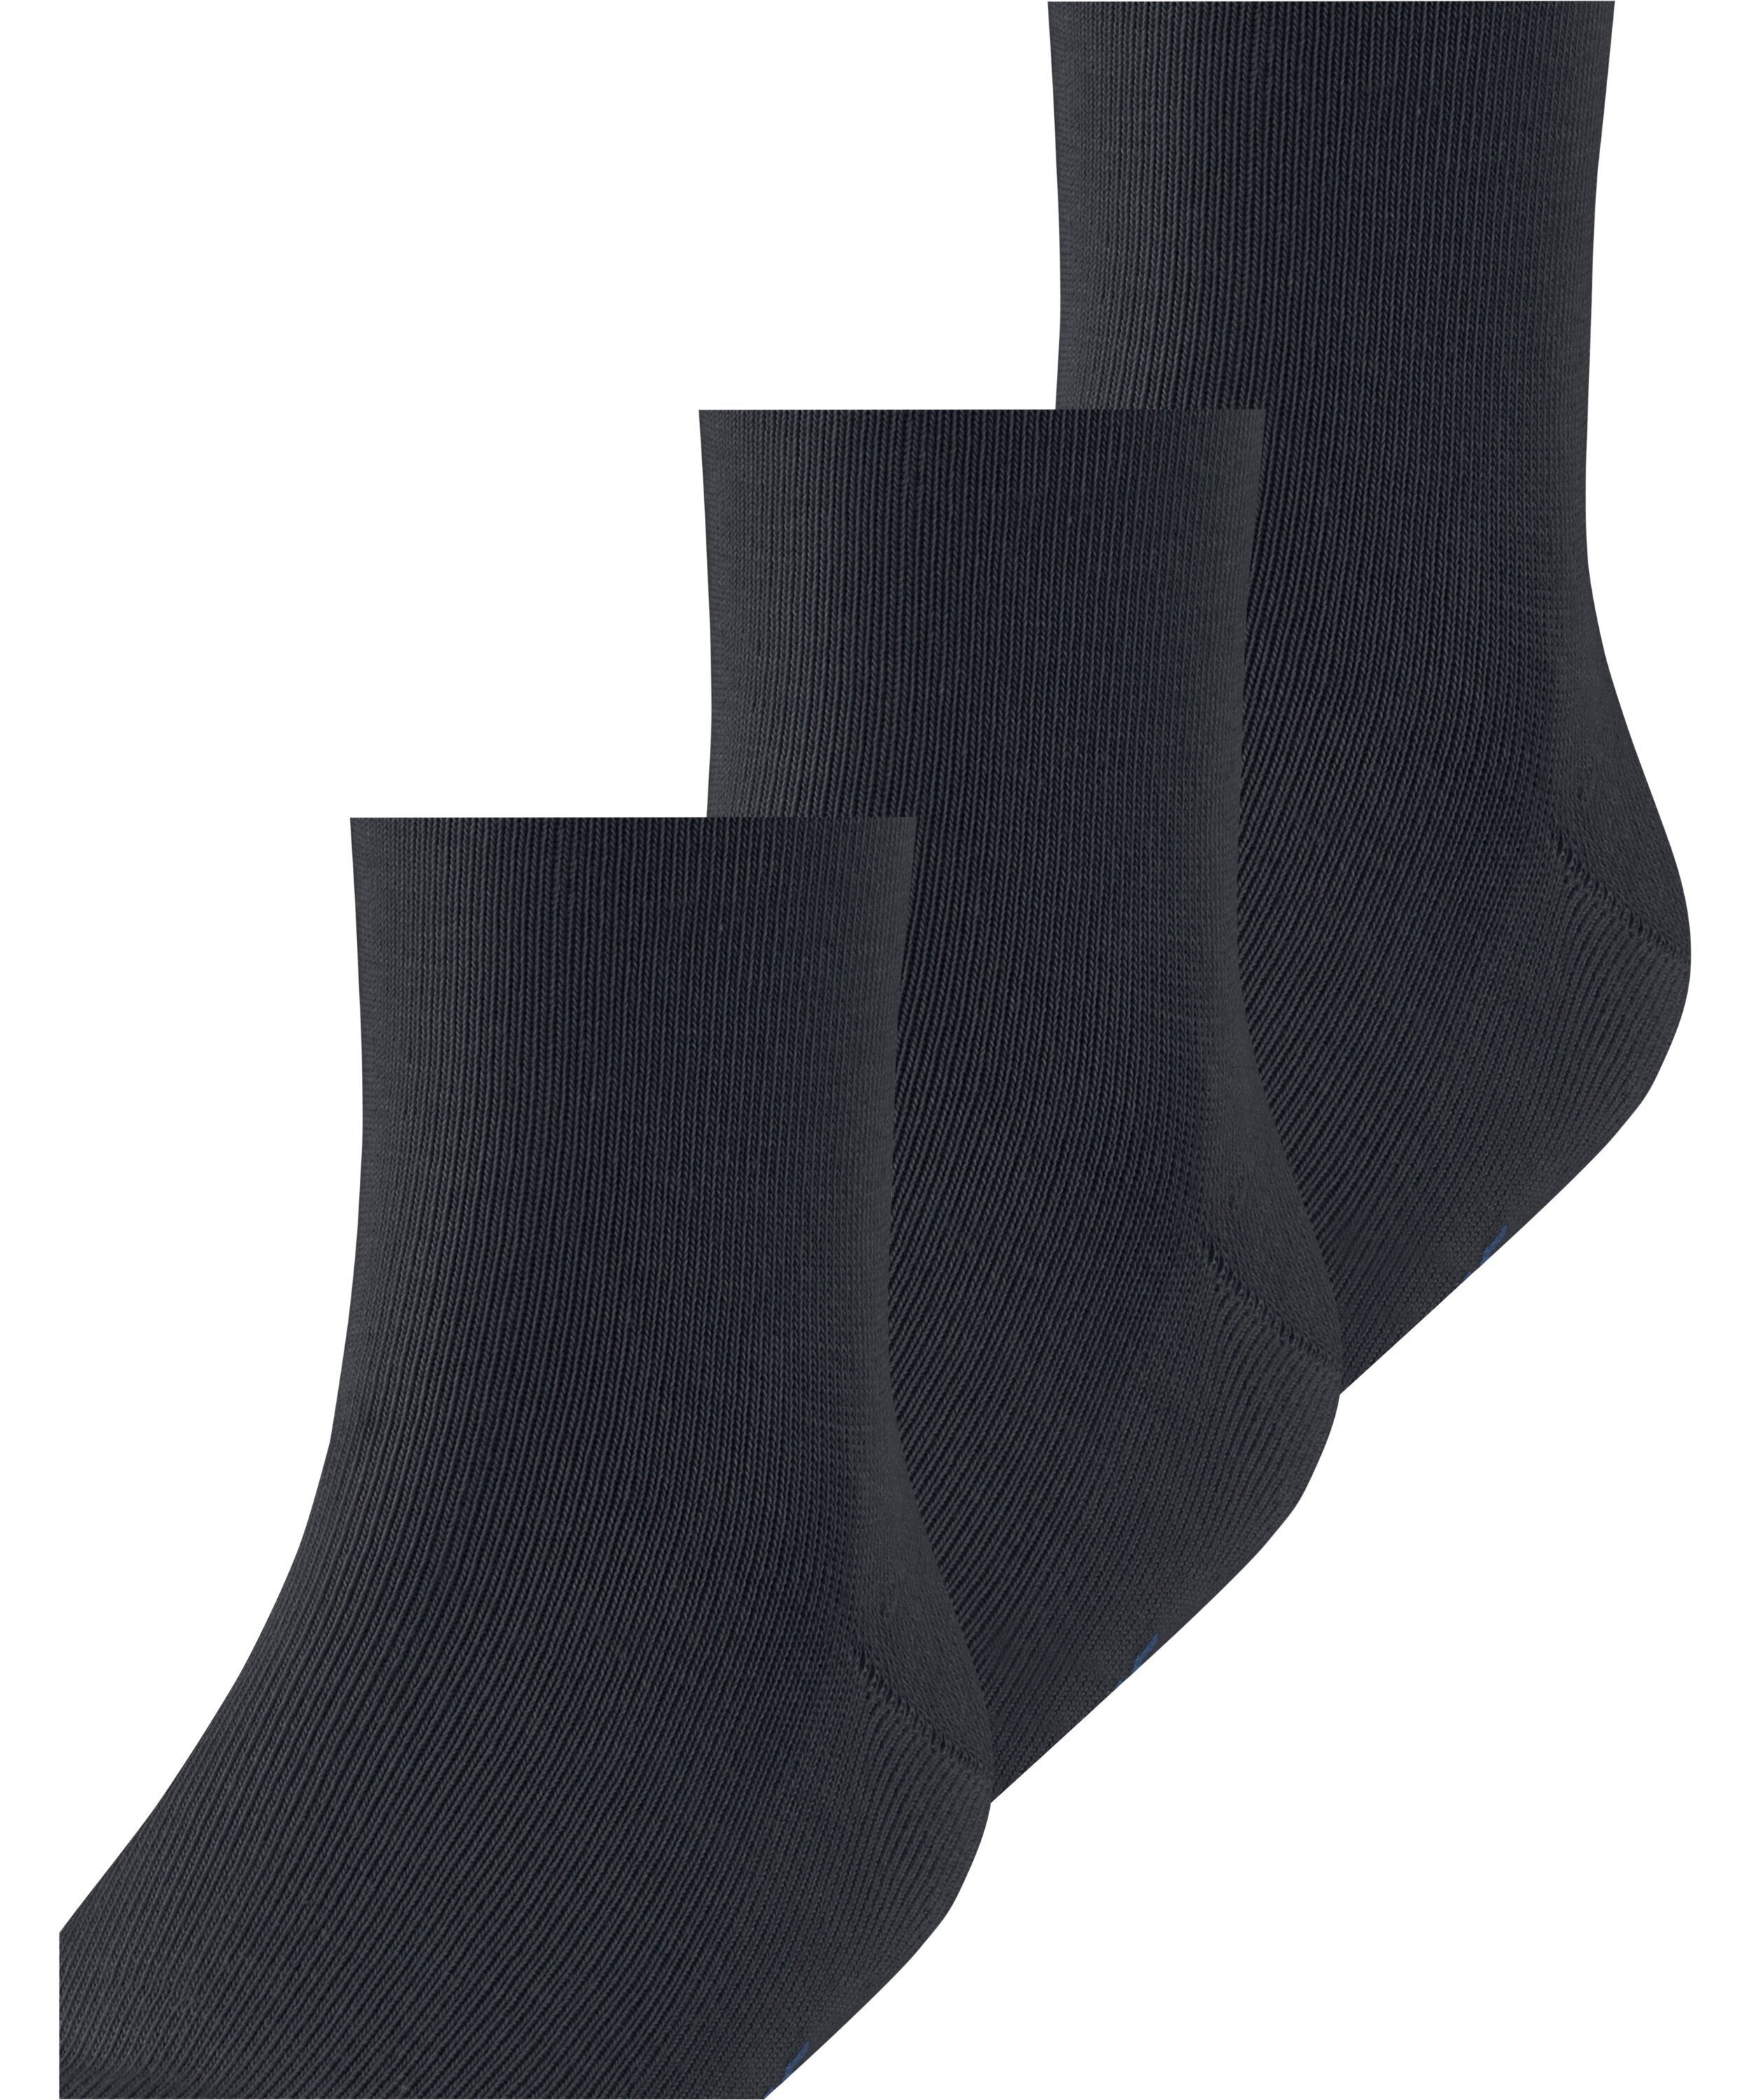 FALKE Socken darkmarine 3-Pack (6170) Family (3-Paar)